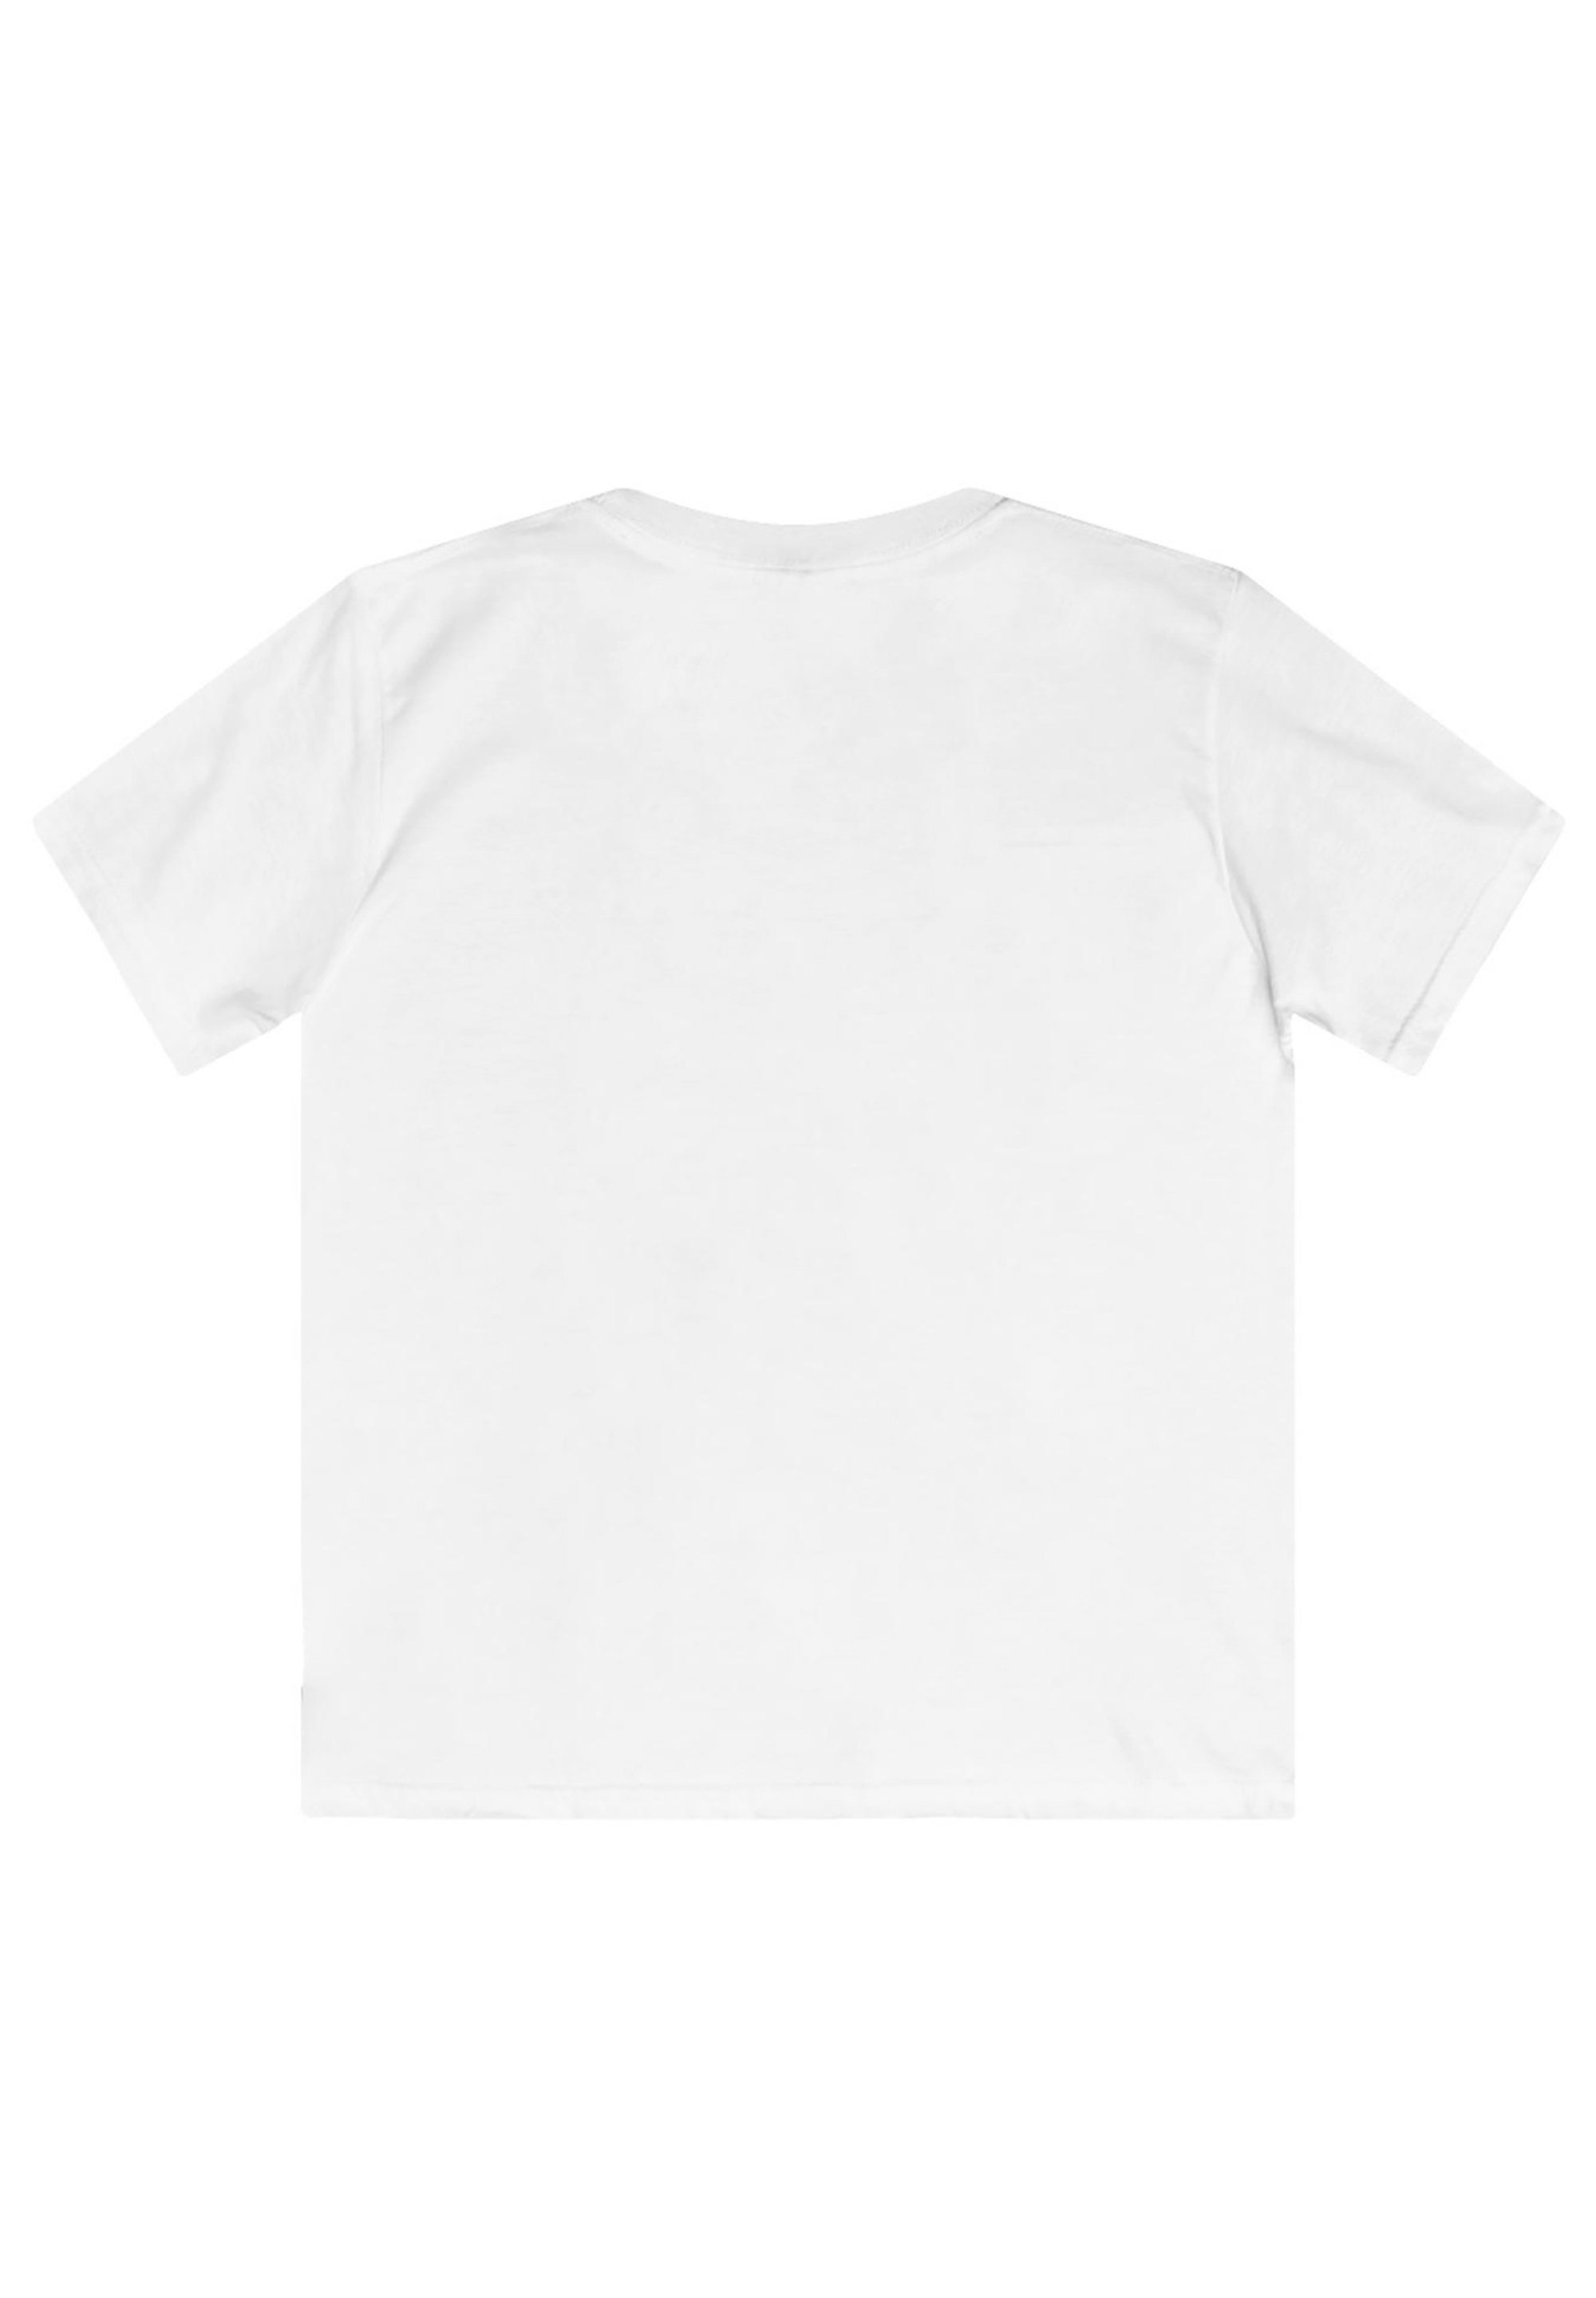 F4NT4STIC T-Shirt Paw Patrol Rubble Unisex Kinder,Premium weiß Merch,Jungen,Mädchen,Bedruckt